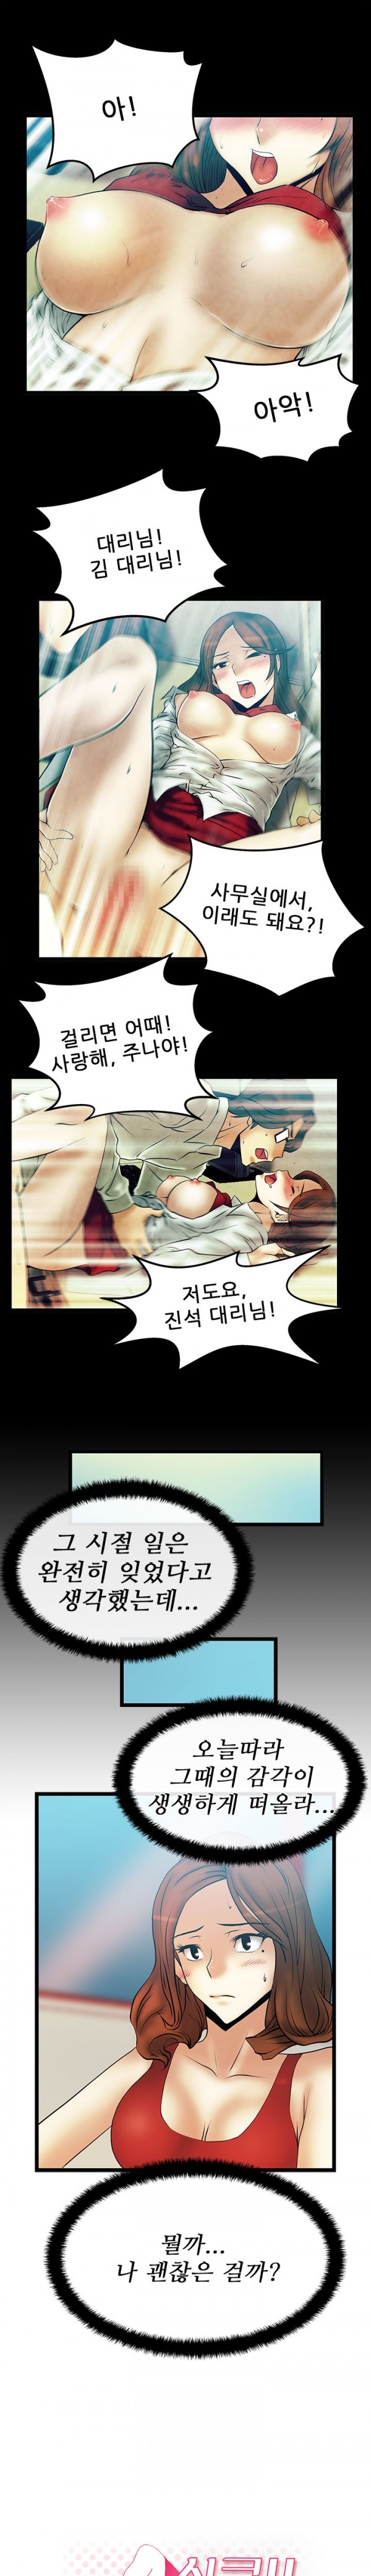 [Minu Mindu] Office Lady Vol. 1 [Korean] 254